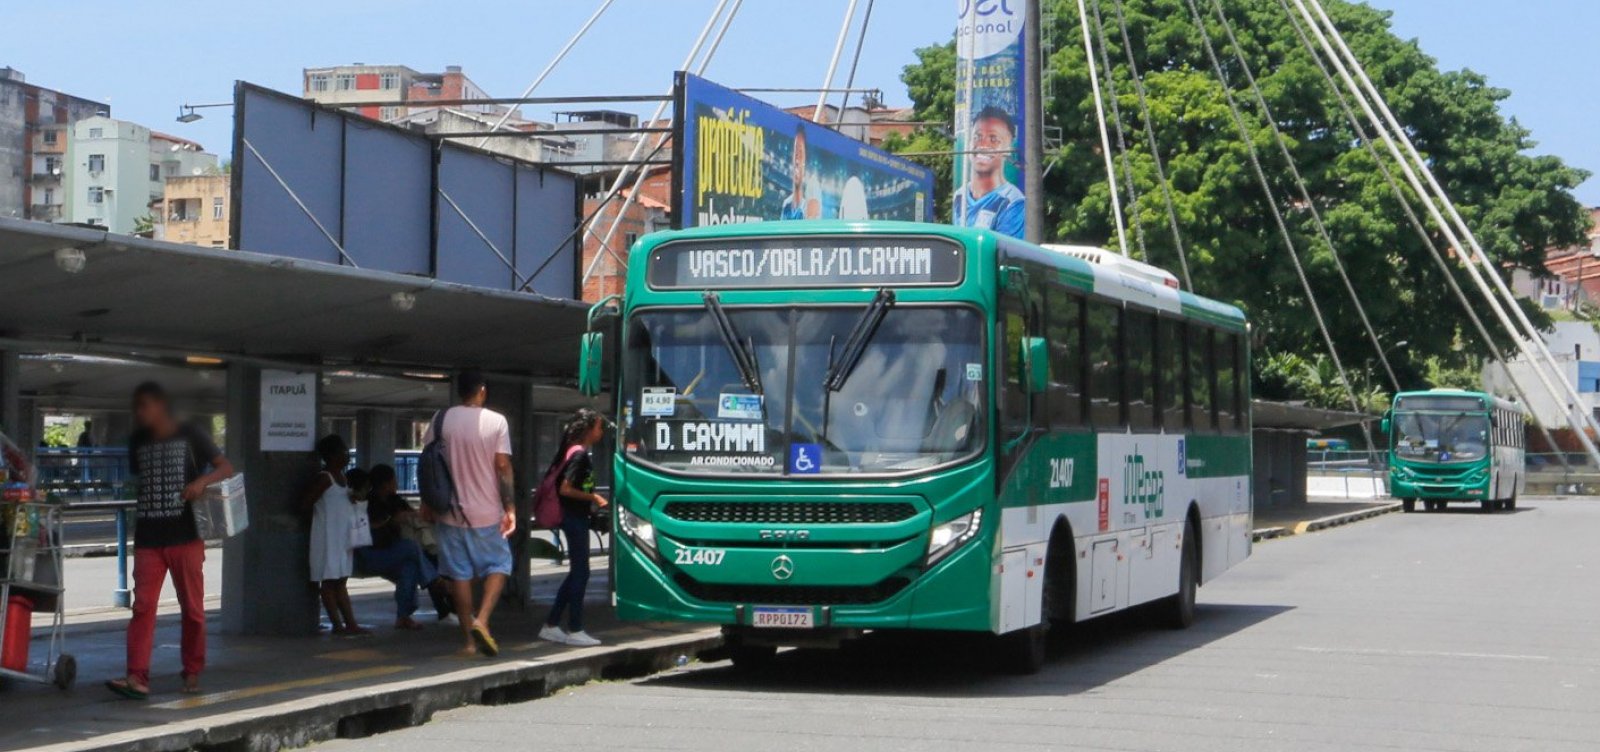 Reunião entre rodoviários e empresas de ônibus Salvador termina sem acordo